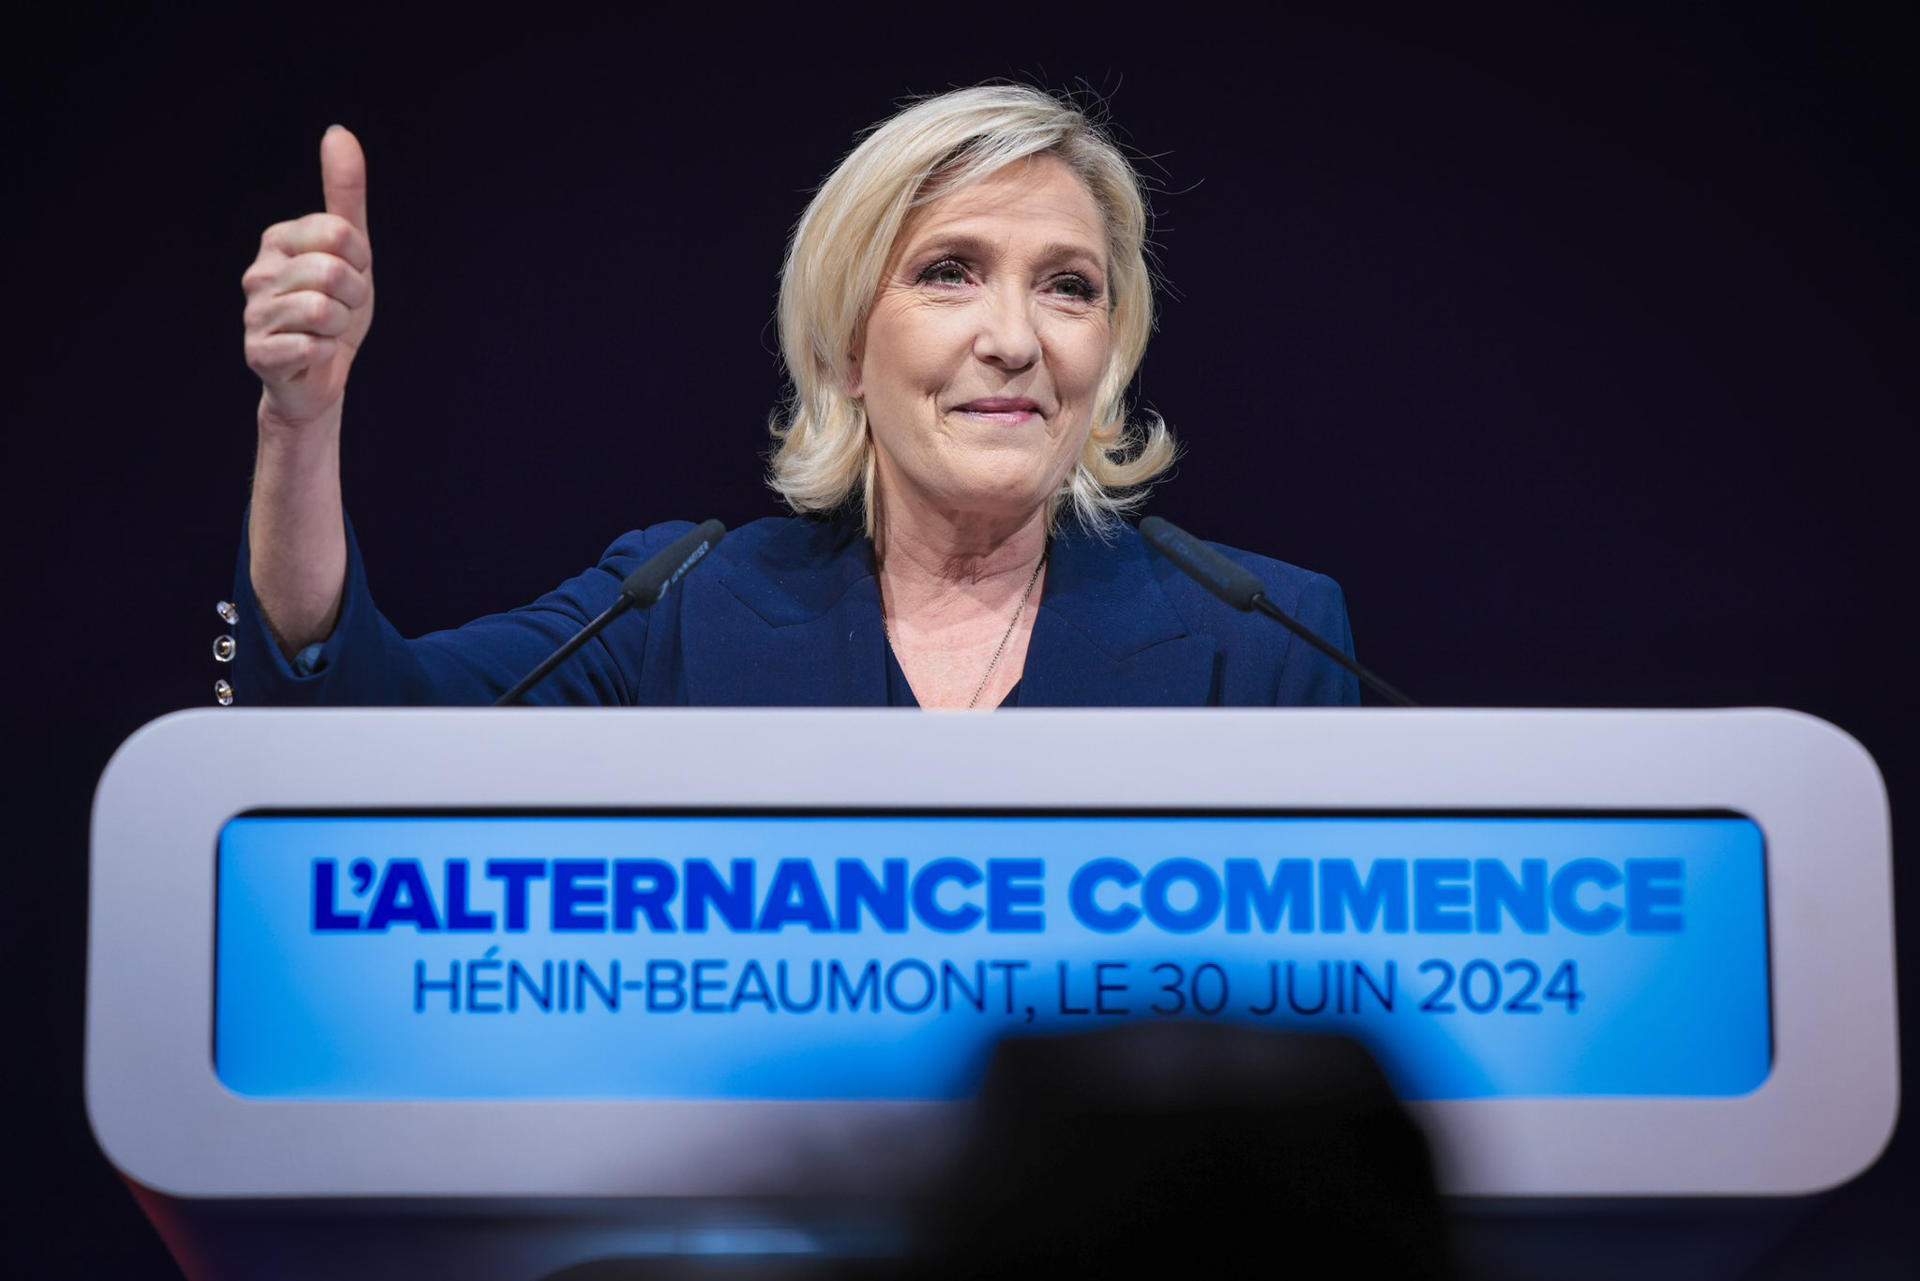 El partit de Le Pen busca acostar-se als Republicans per assegurar-se la majoria